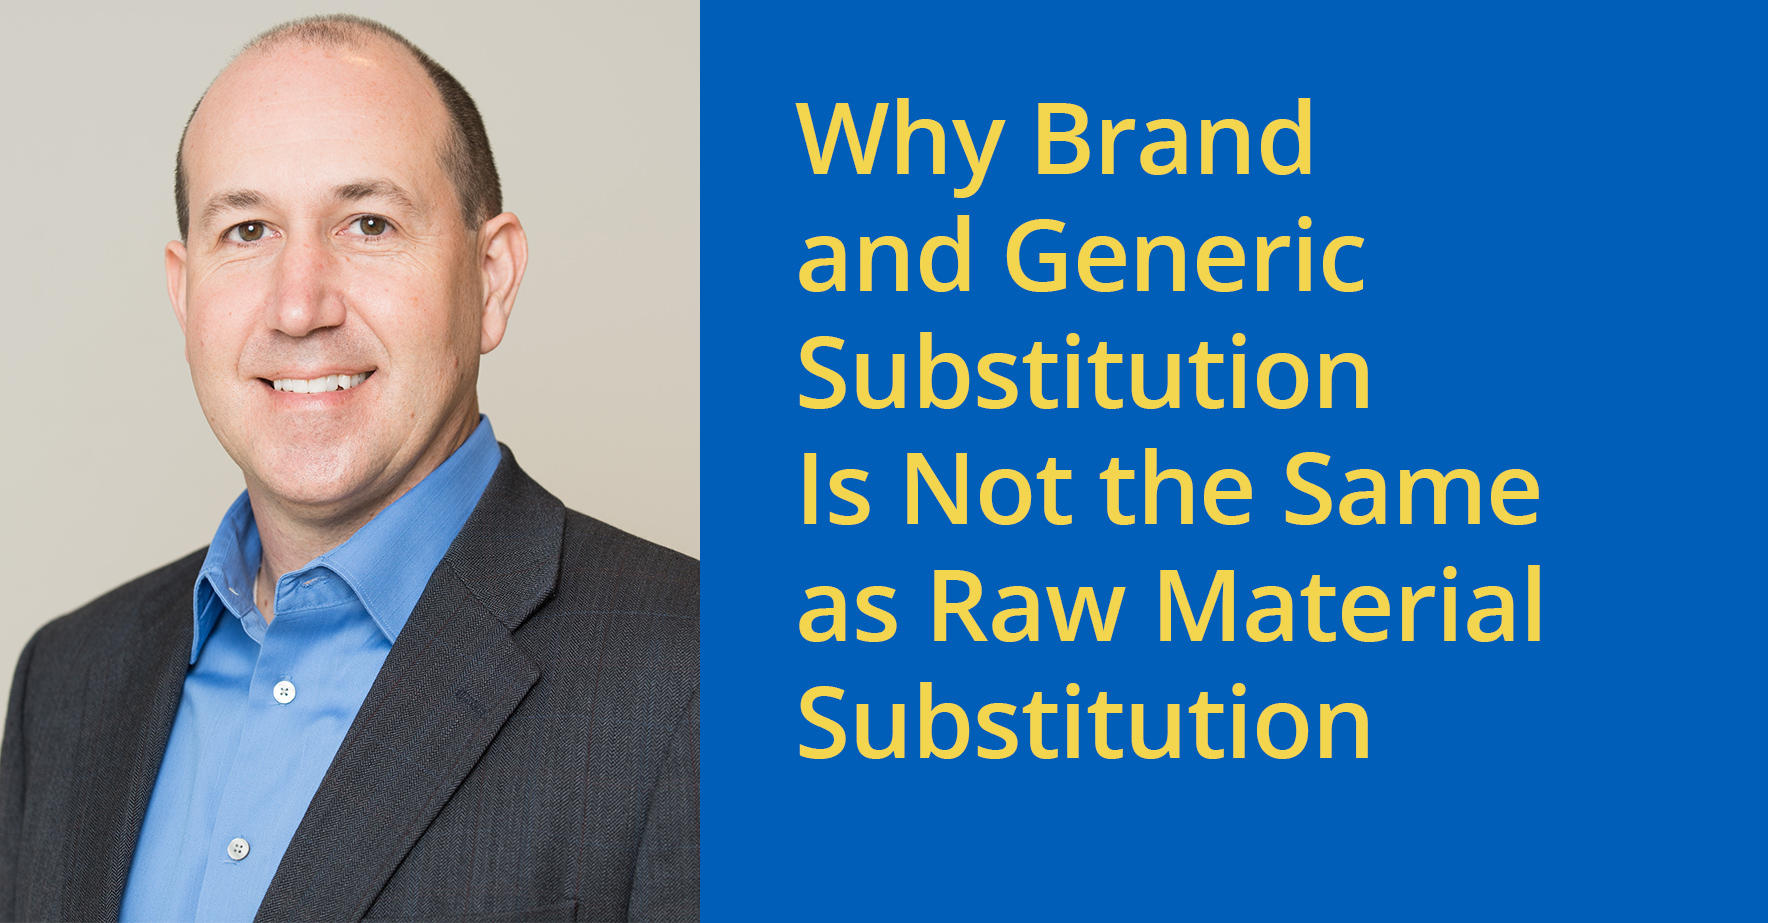 为什么_brand_and_generic_substutut _is_not_the_same_as_raw_material_substitution.jpg.